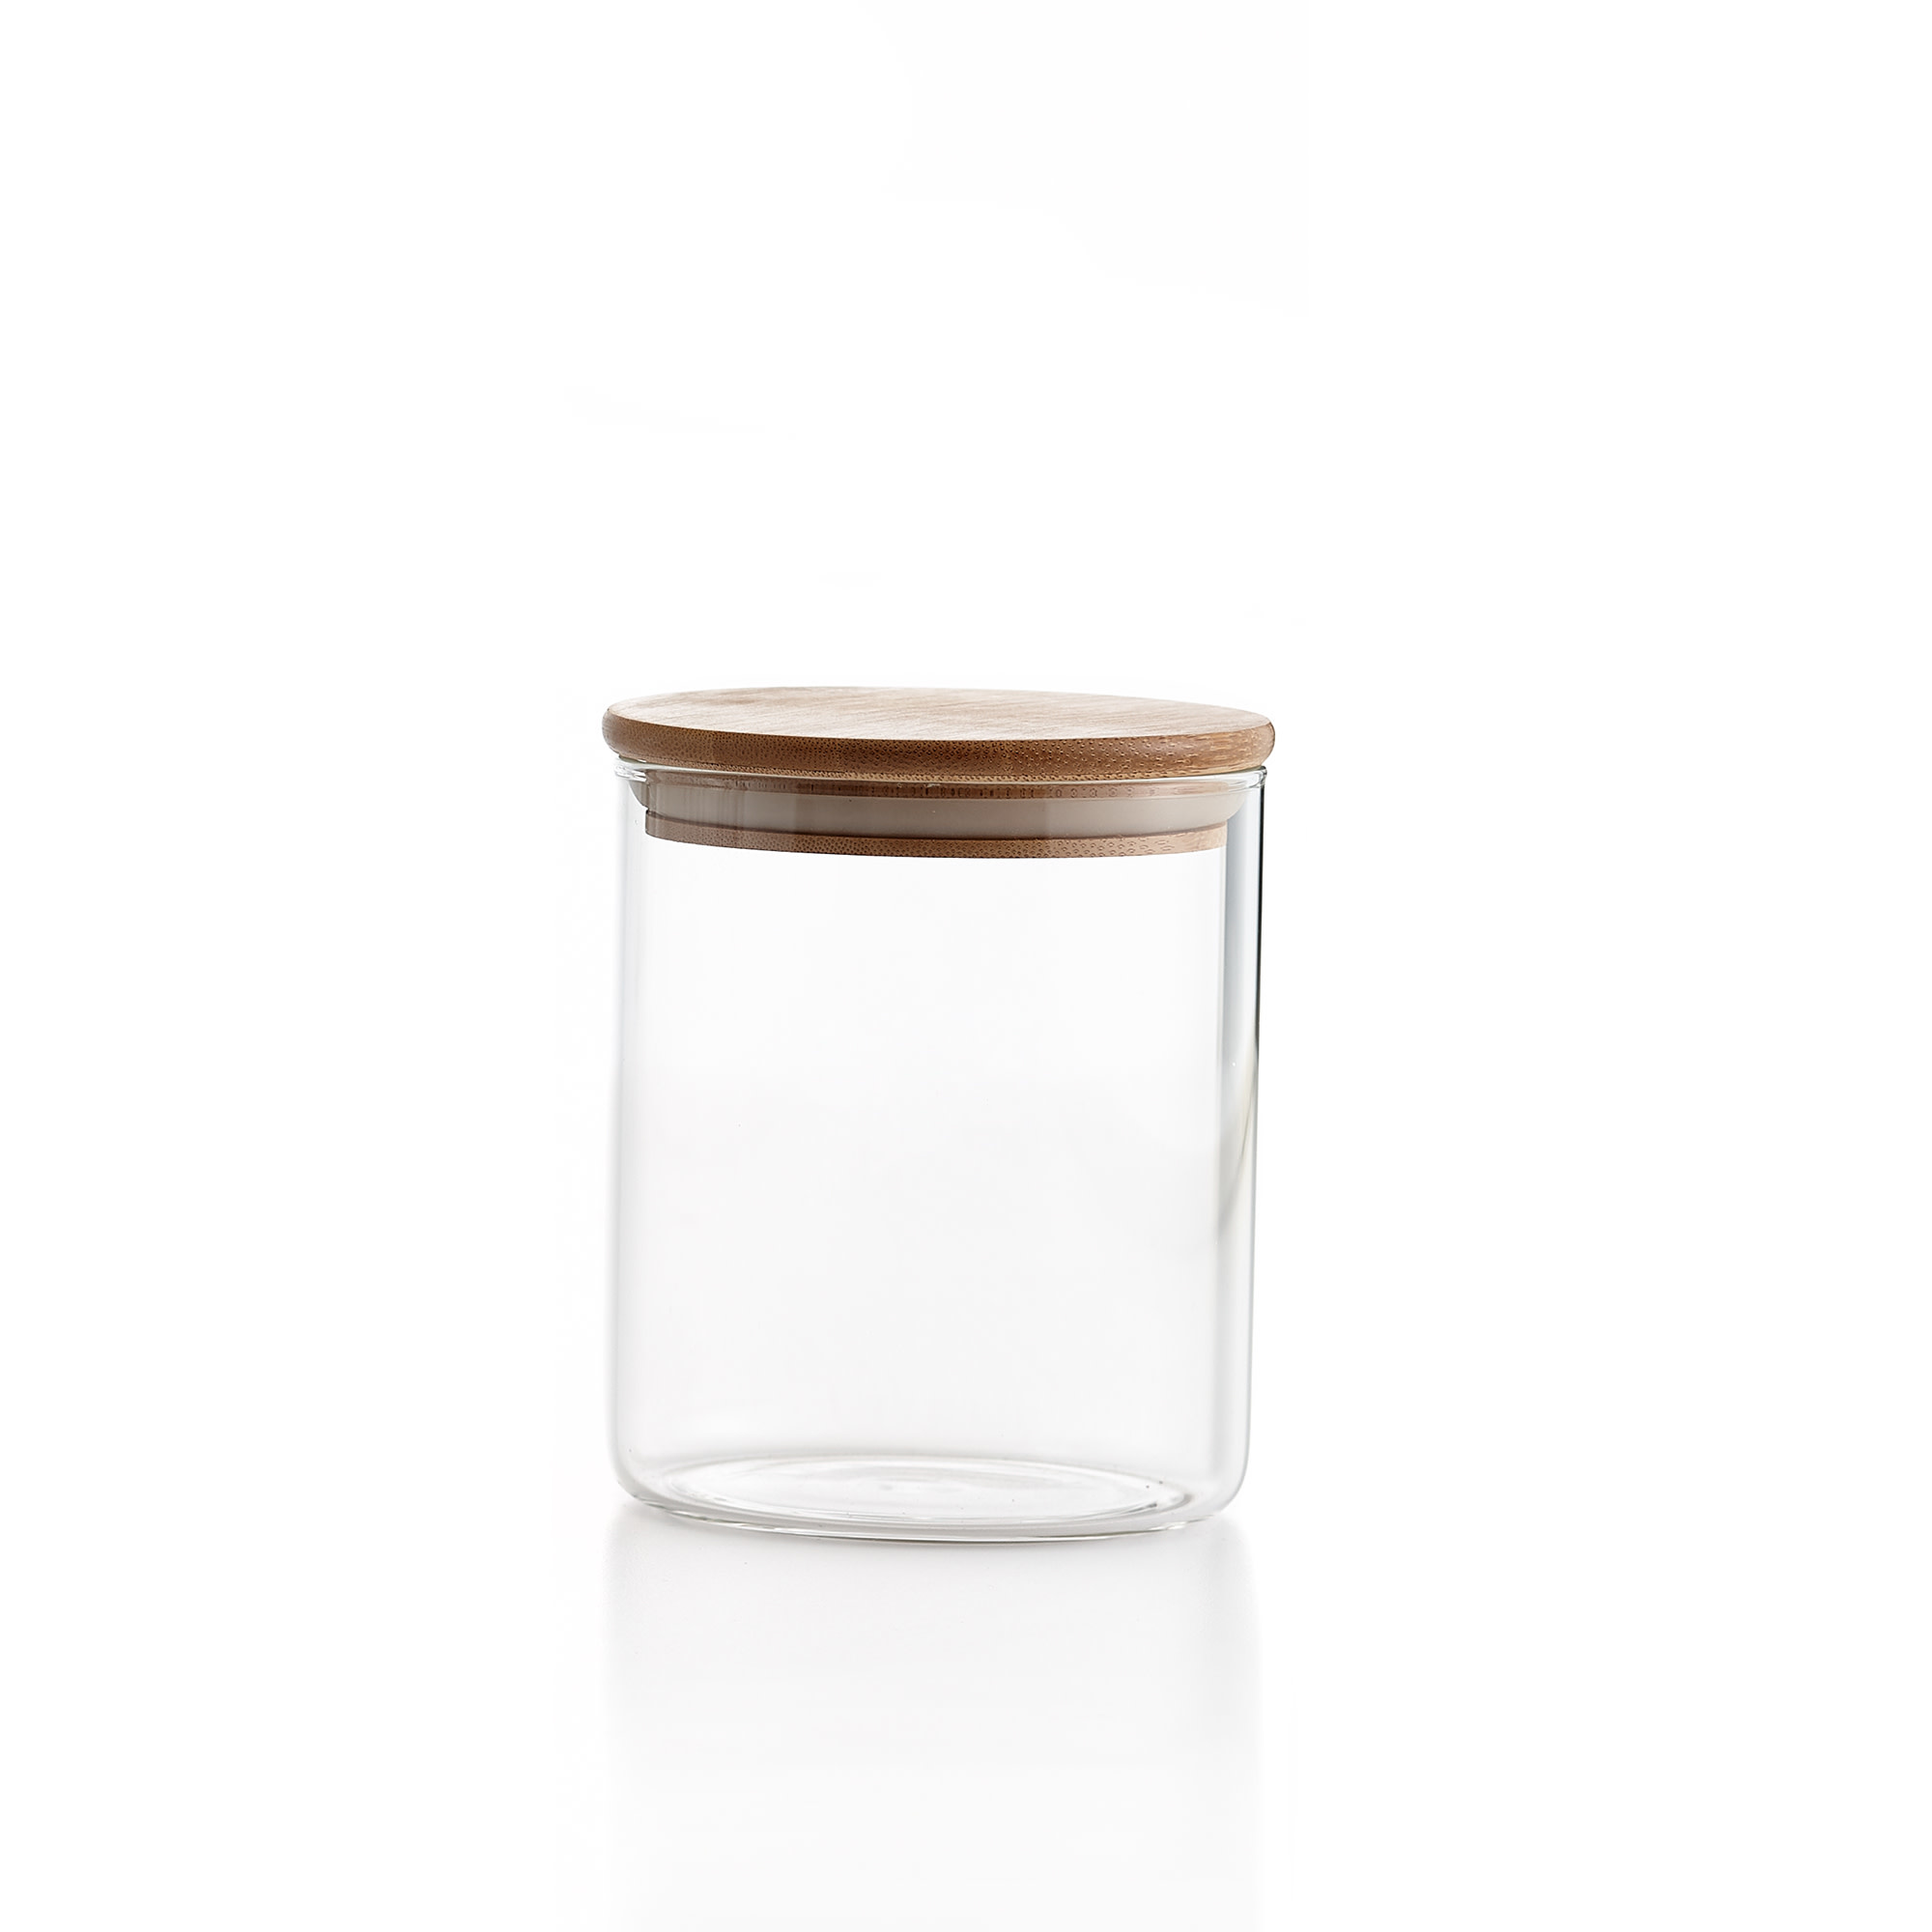 Relaxdays Lot de 9 bocaux en verre, petits pots avec couvercle bambou, 500  ml, hermétique, transparent/nature